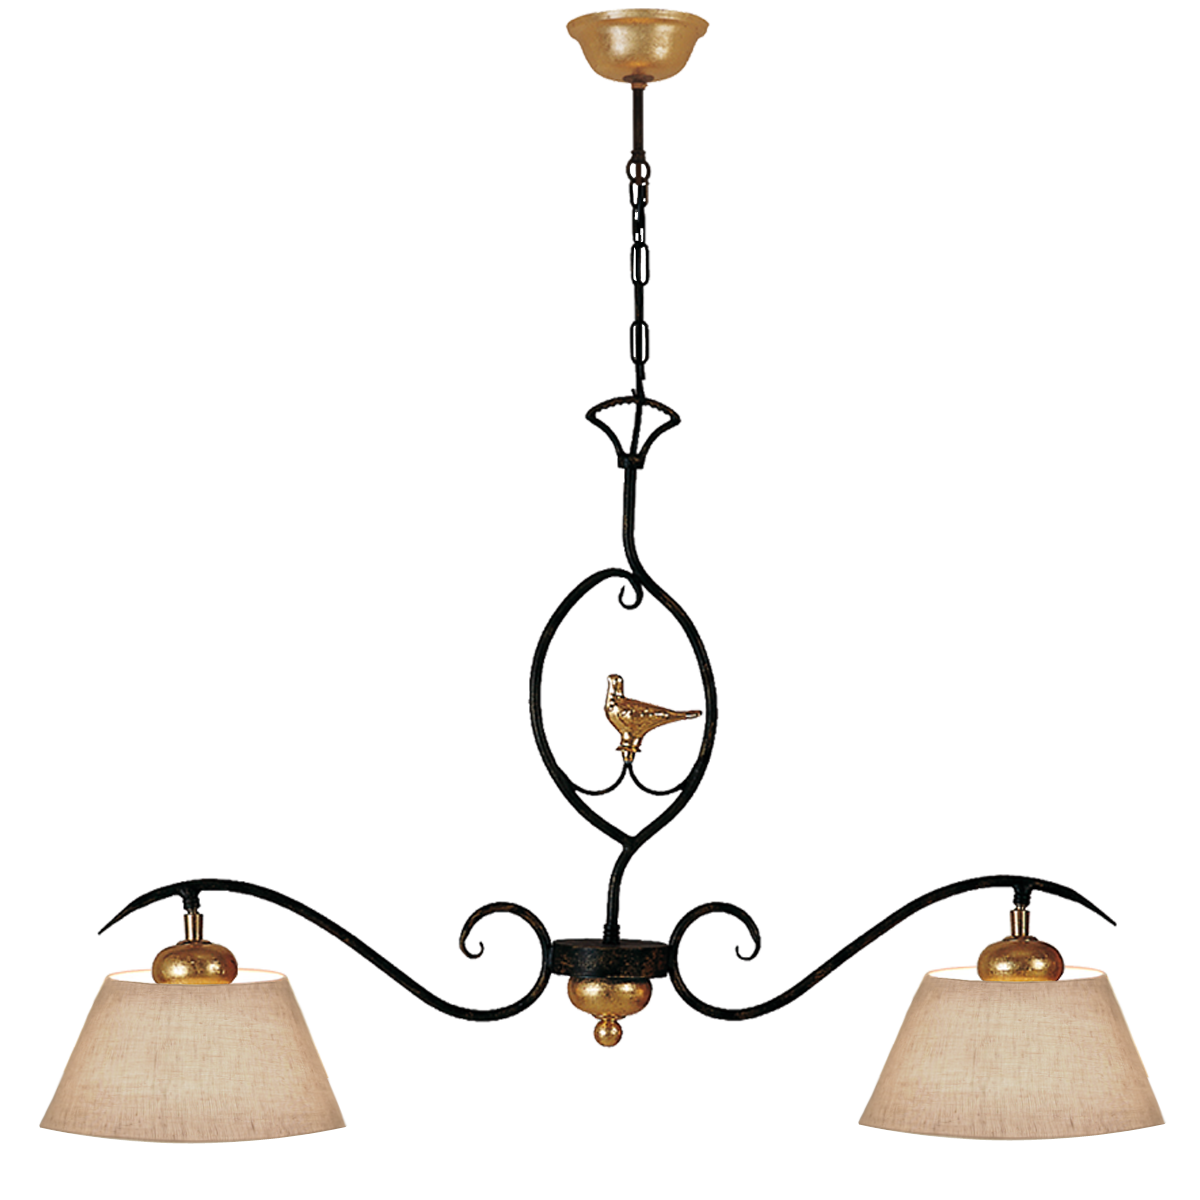 Provence Romantik Hängeleuchte B=96cm für den Esstisch länglich 2 flammig Eisen Keramik mit Leinen Lampenschirm für das Landhaus